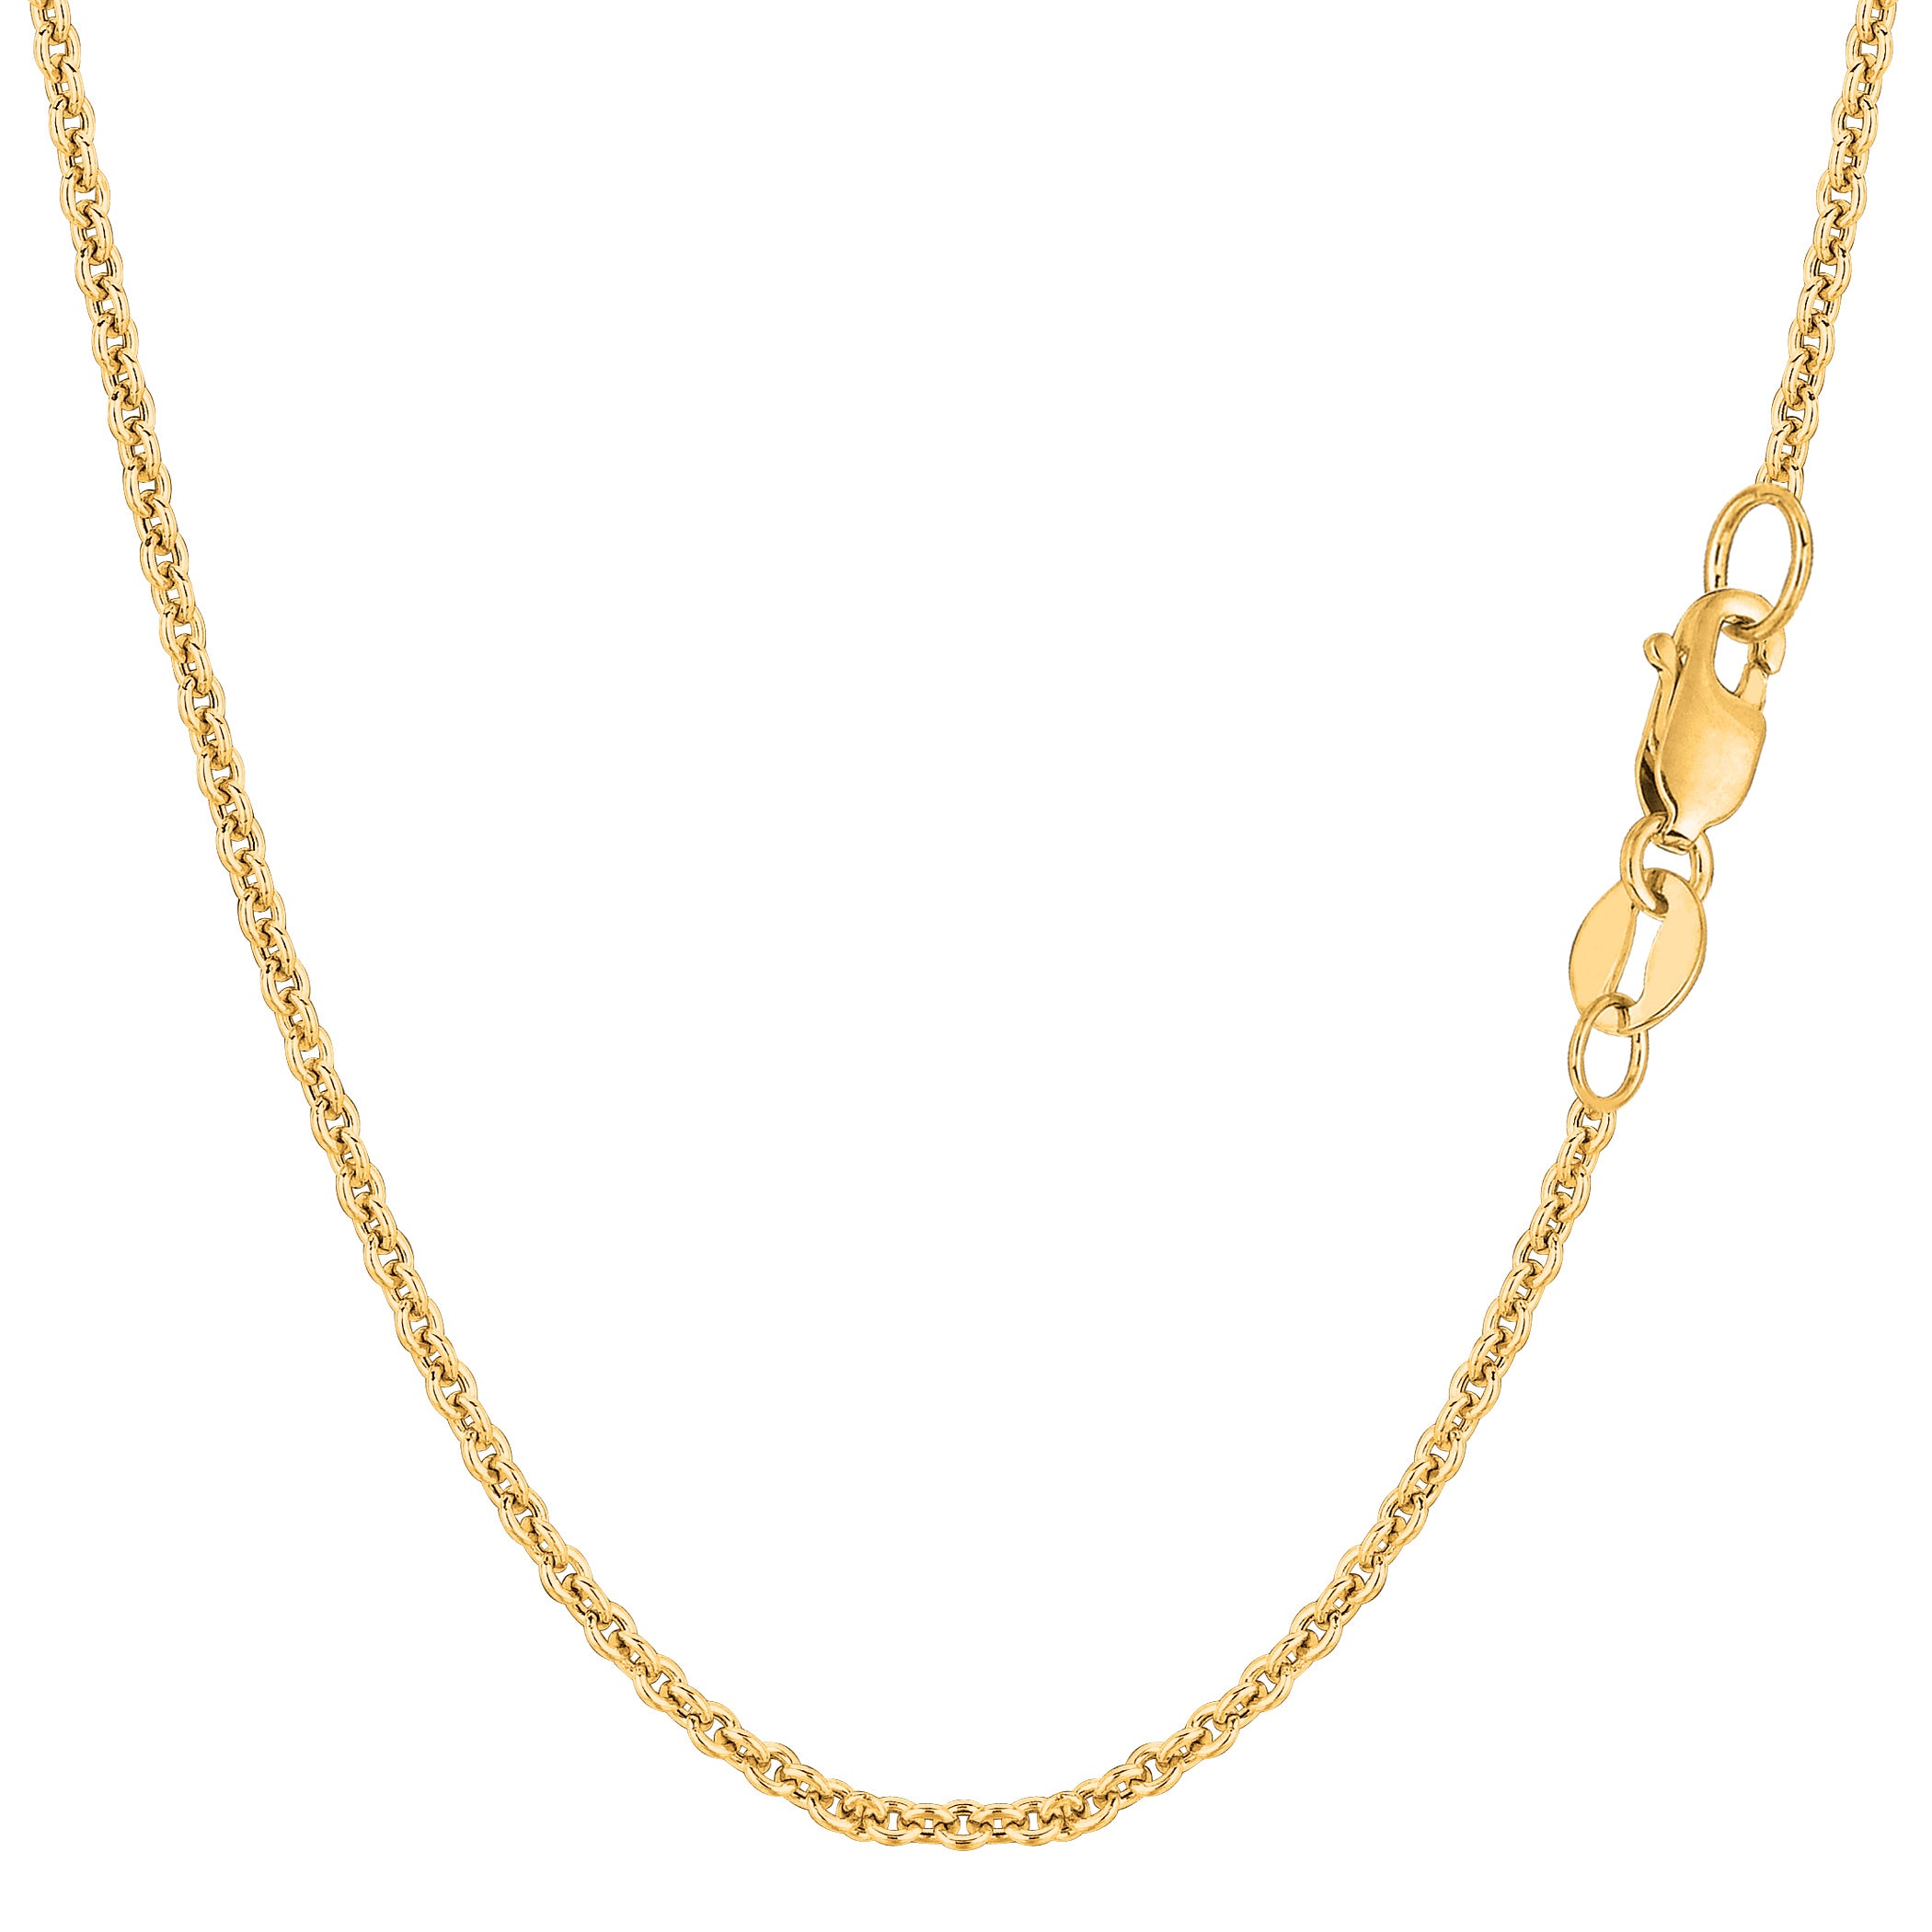 Collana a catena Forsantina in oro giallo 14k, gioielli di alta qualità da 1,9 mm per uomini e donne